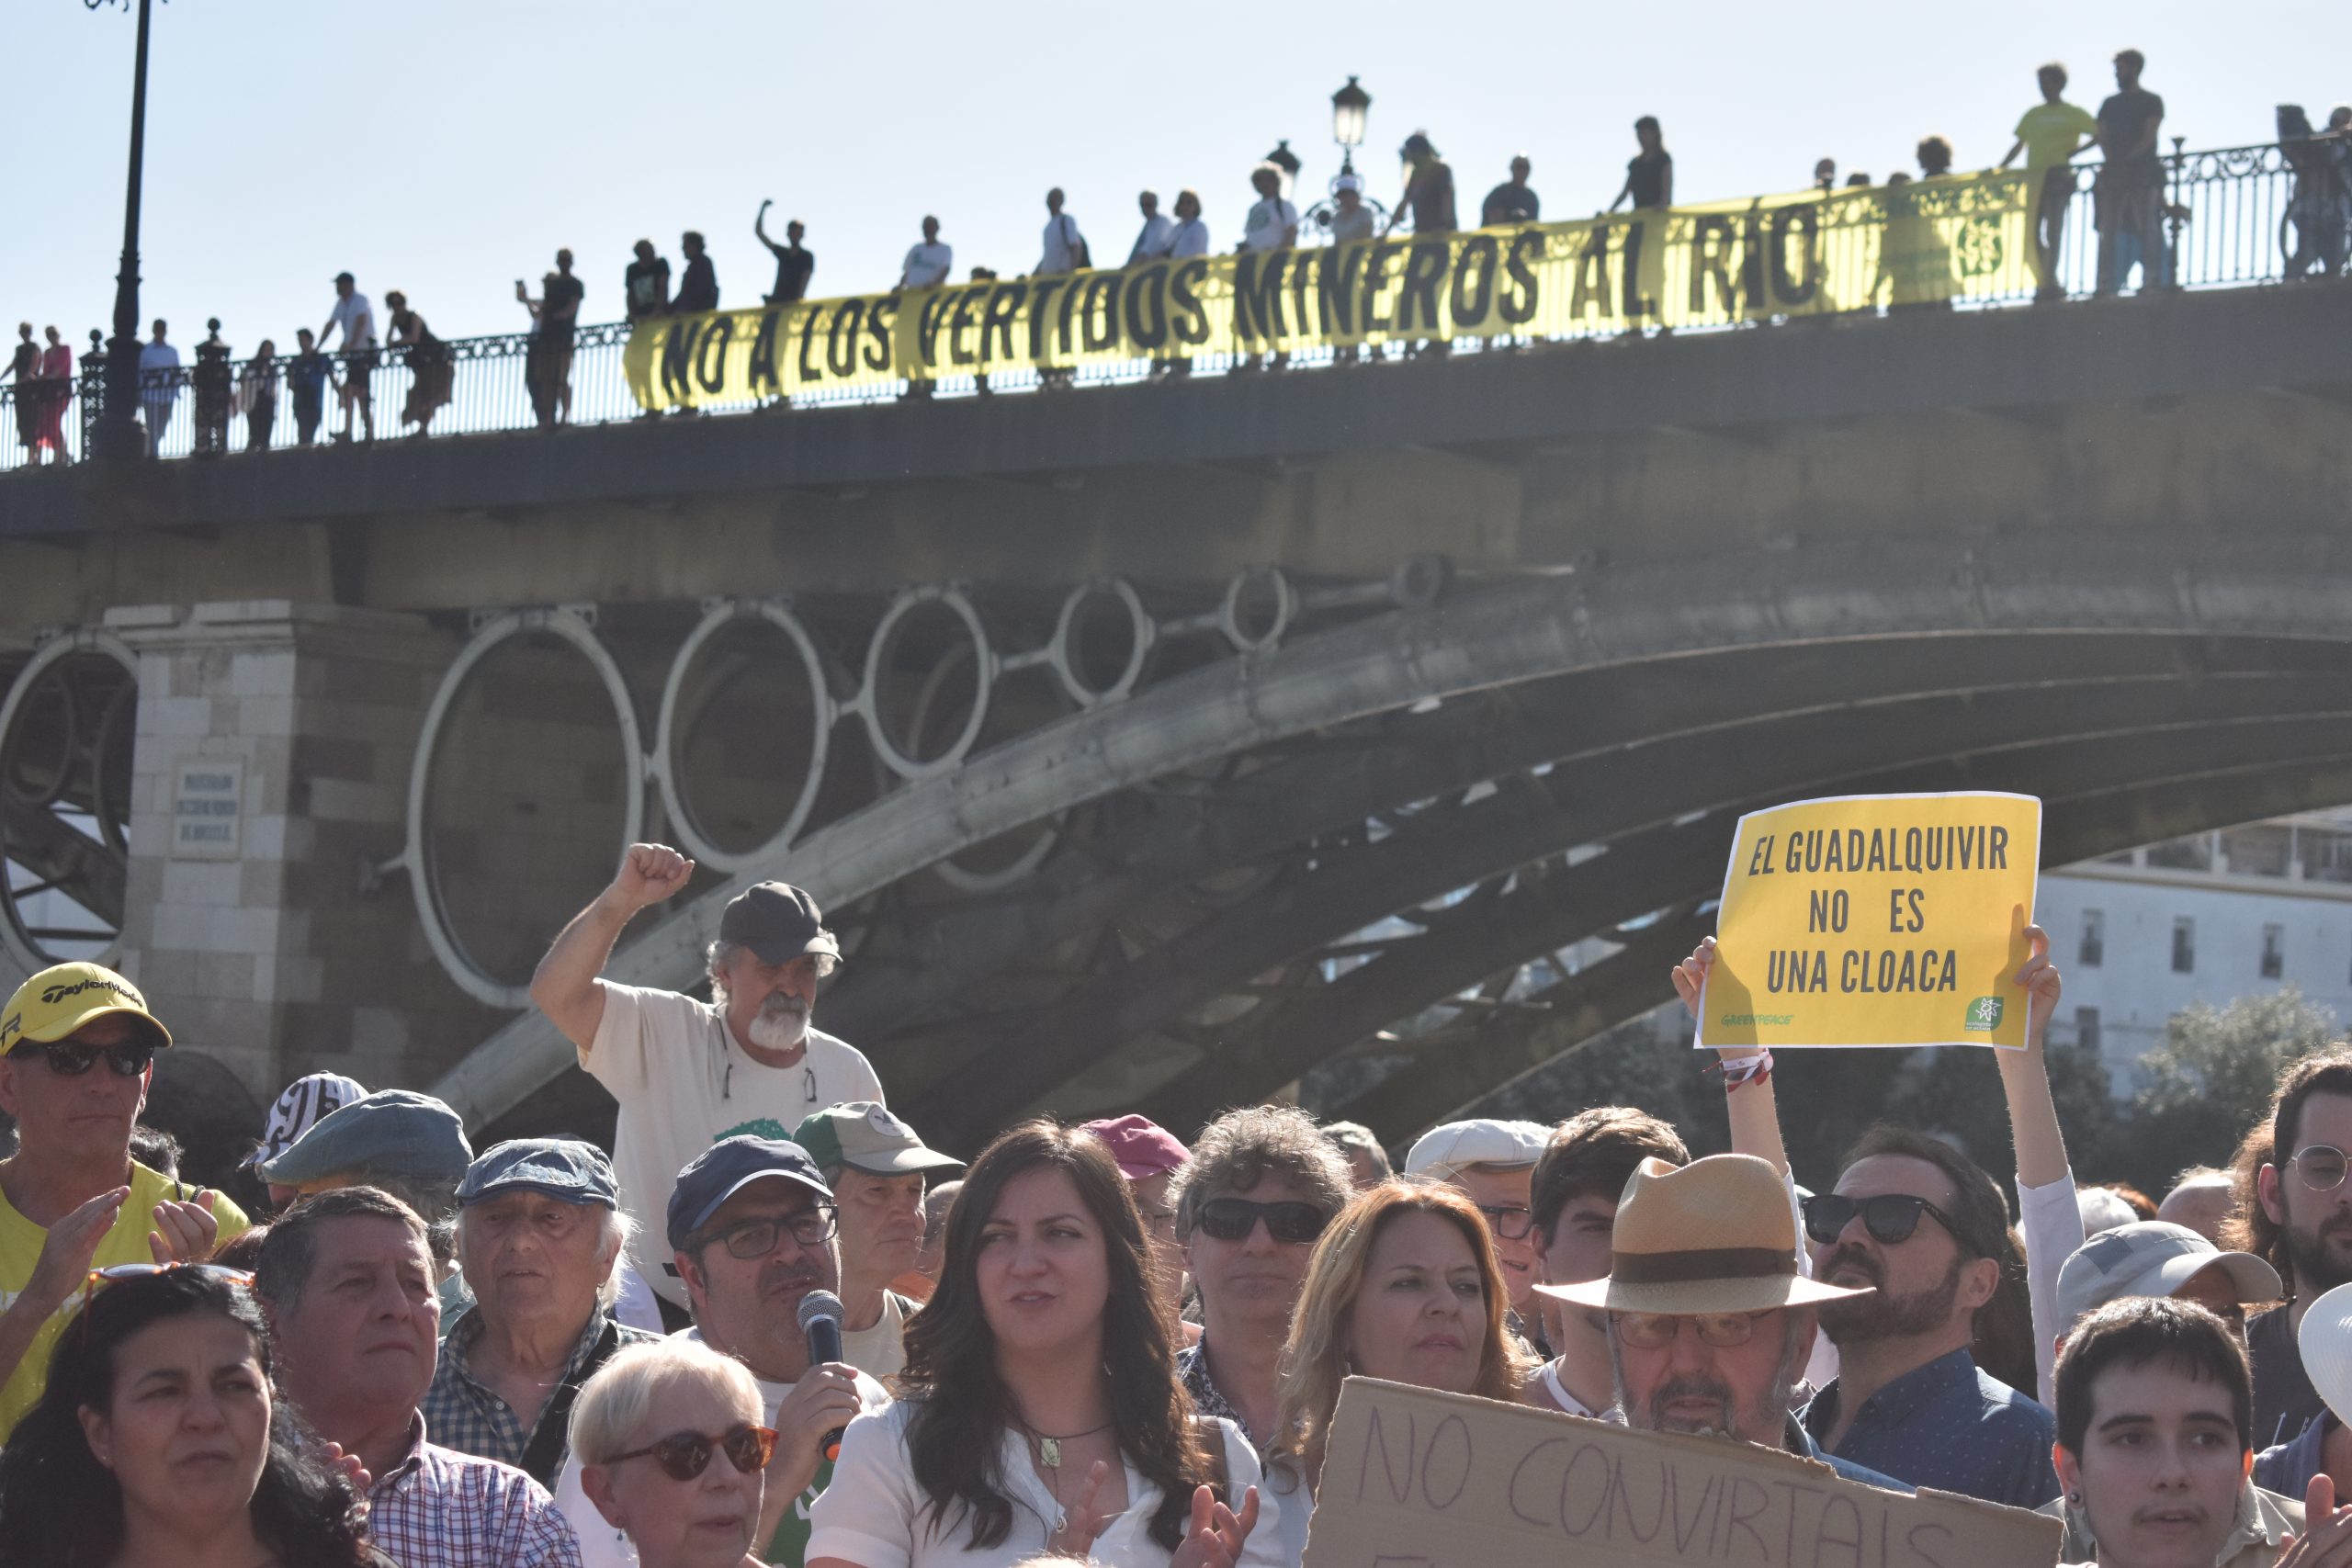 "No a los vertidos mineros al río". Pancarta durante la protesta contra el vertido de miles de millones de aguas tóxicas al río Guadalquivir.